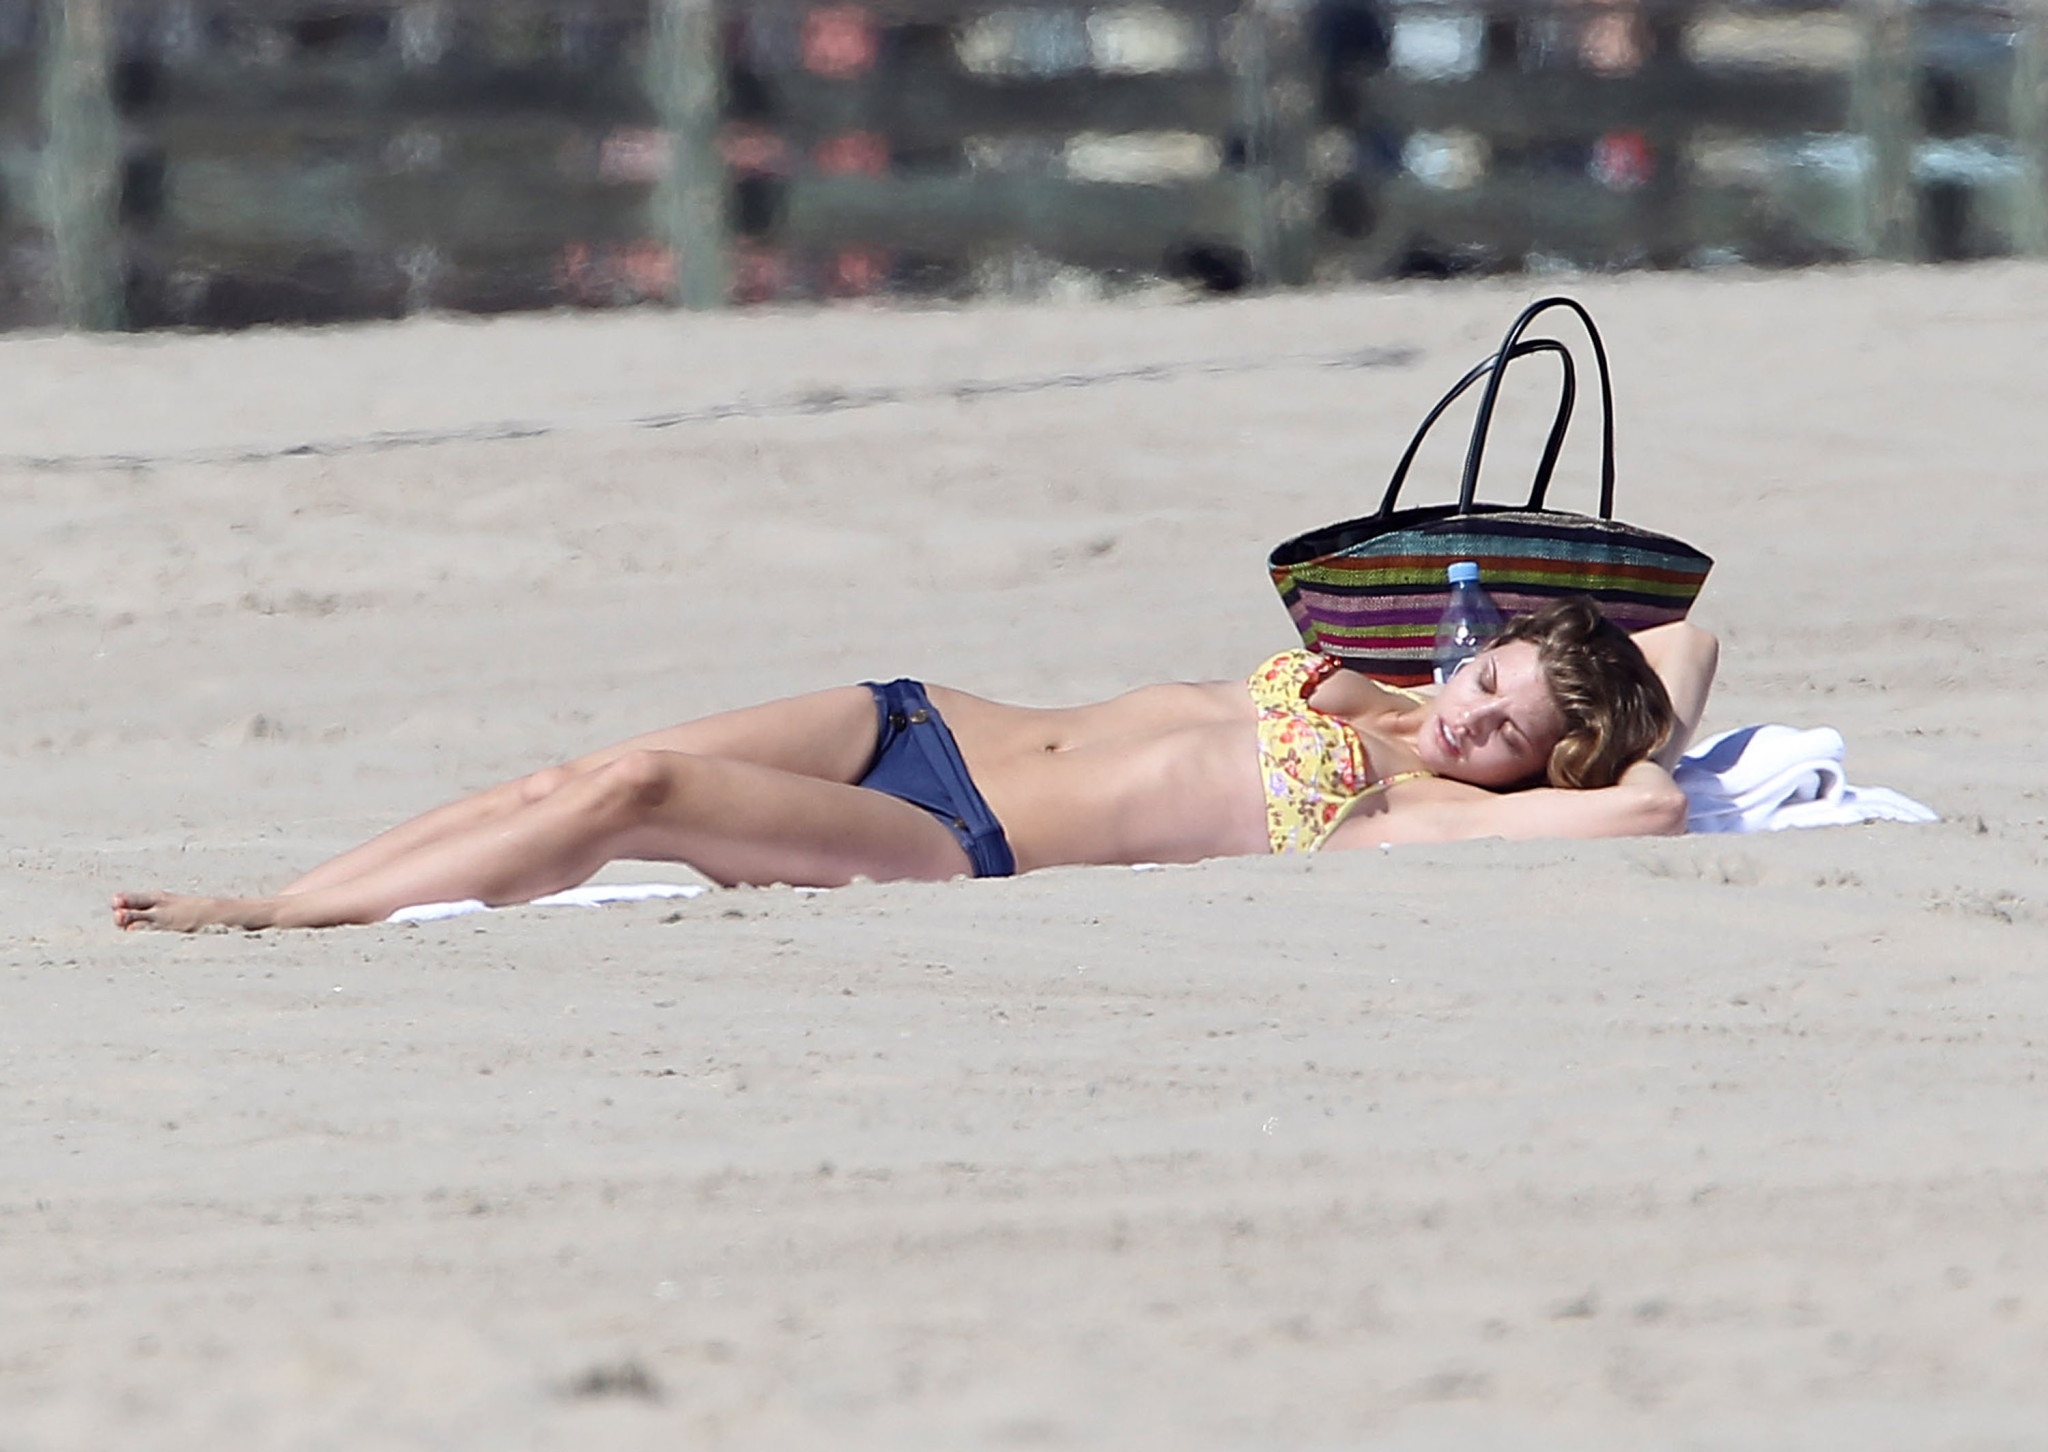 Annalynne mccord zeigt ihren arsch in einem altmodischen bikini am strand in cali
 #75272623